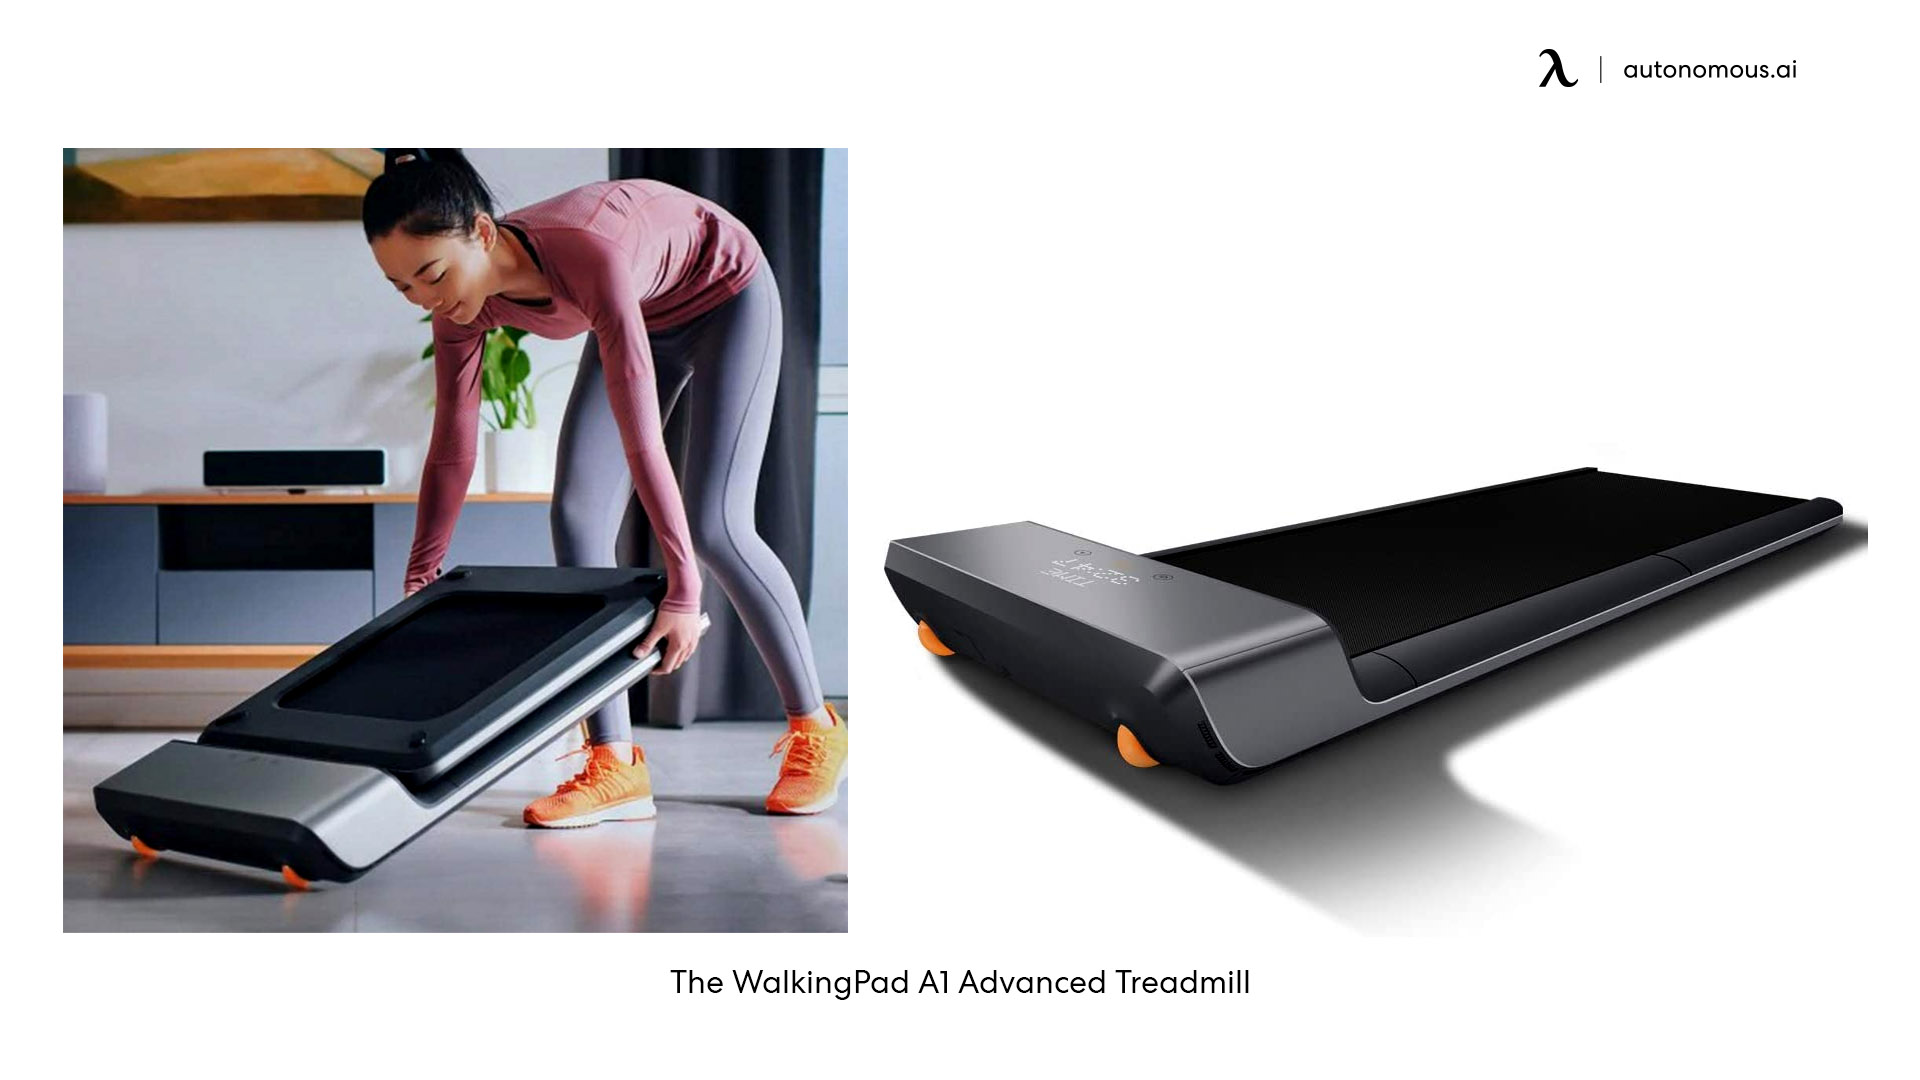 The WalkingPad A1 Advanced Treadmill